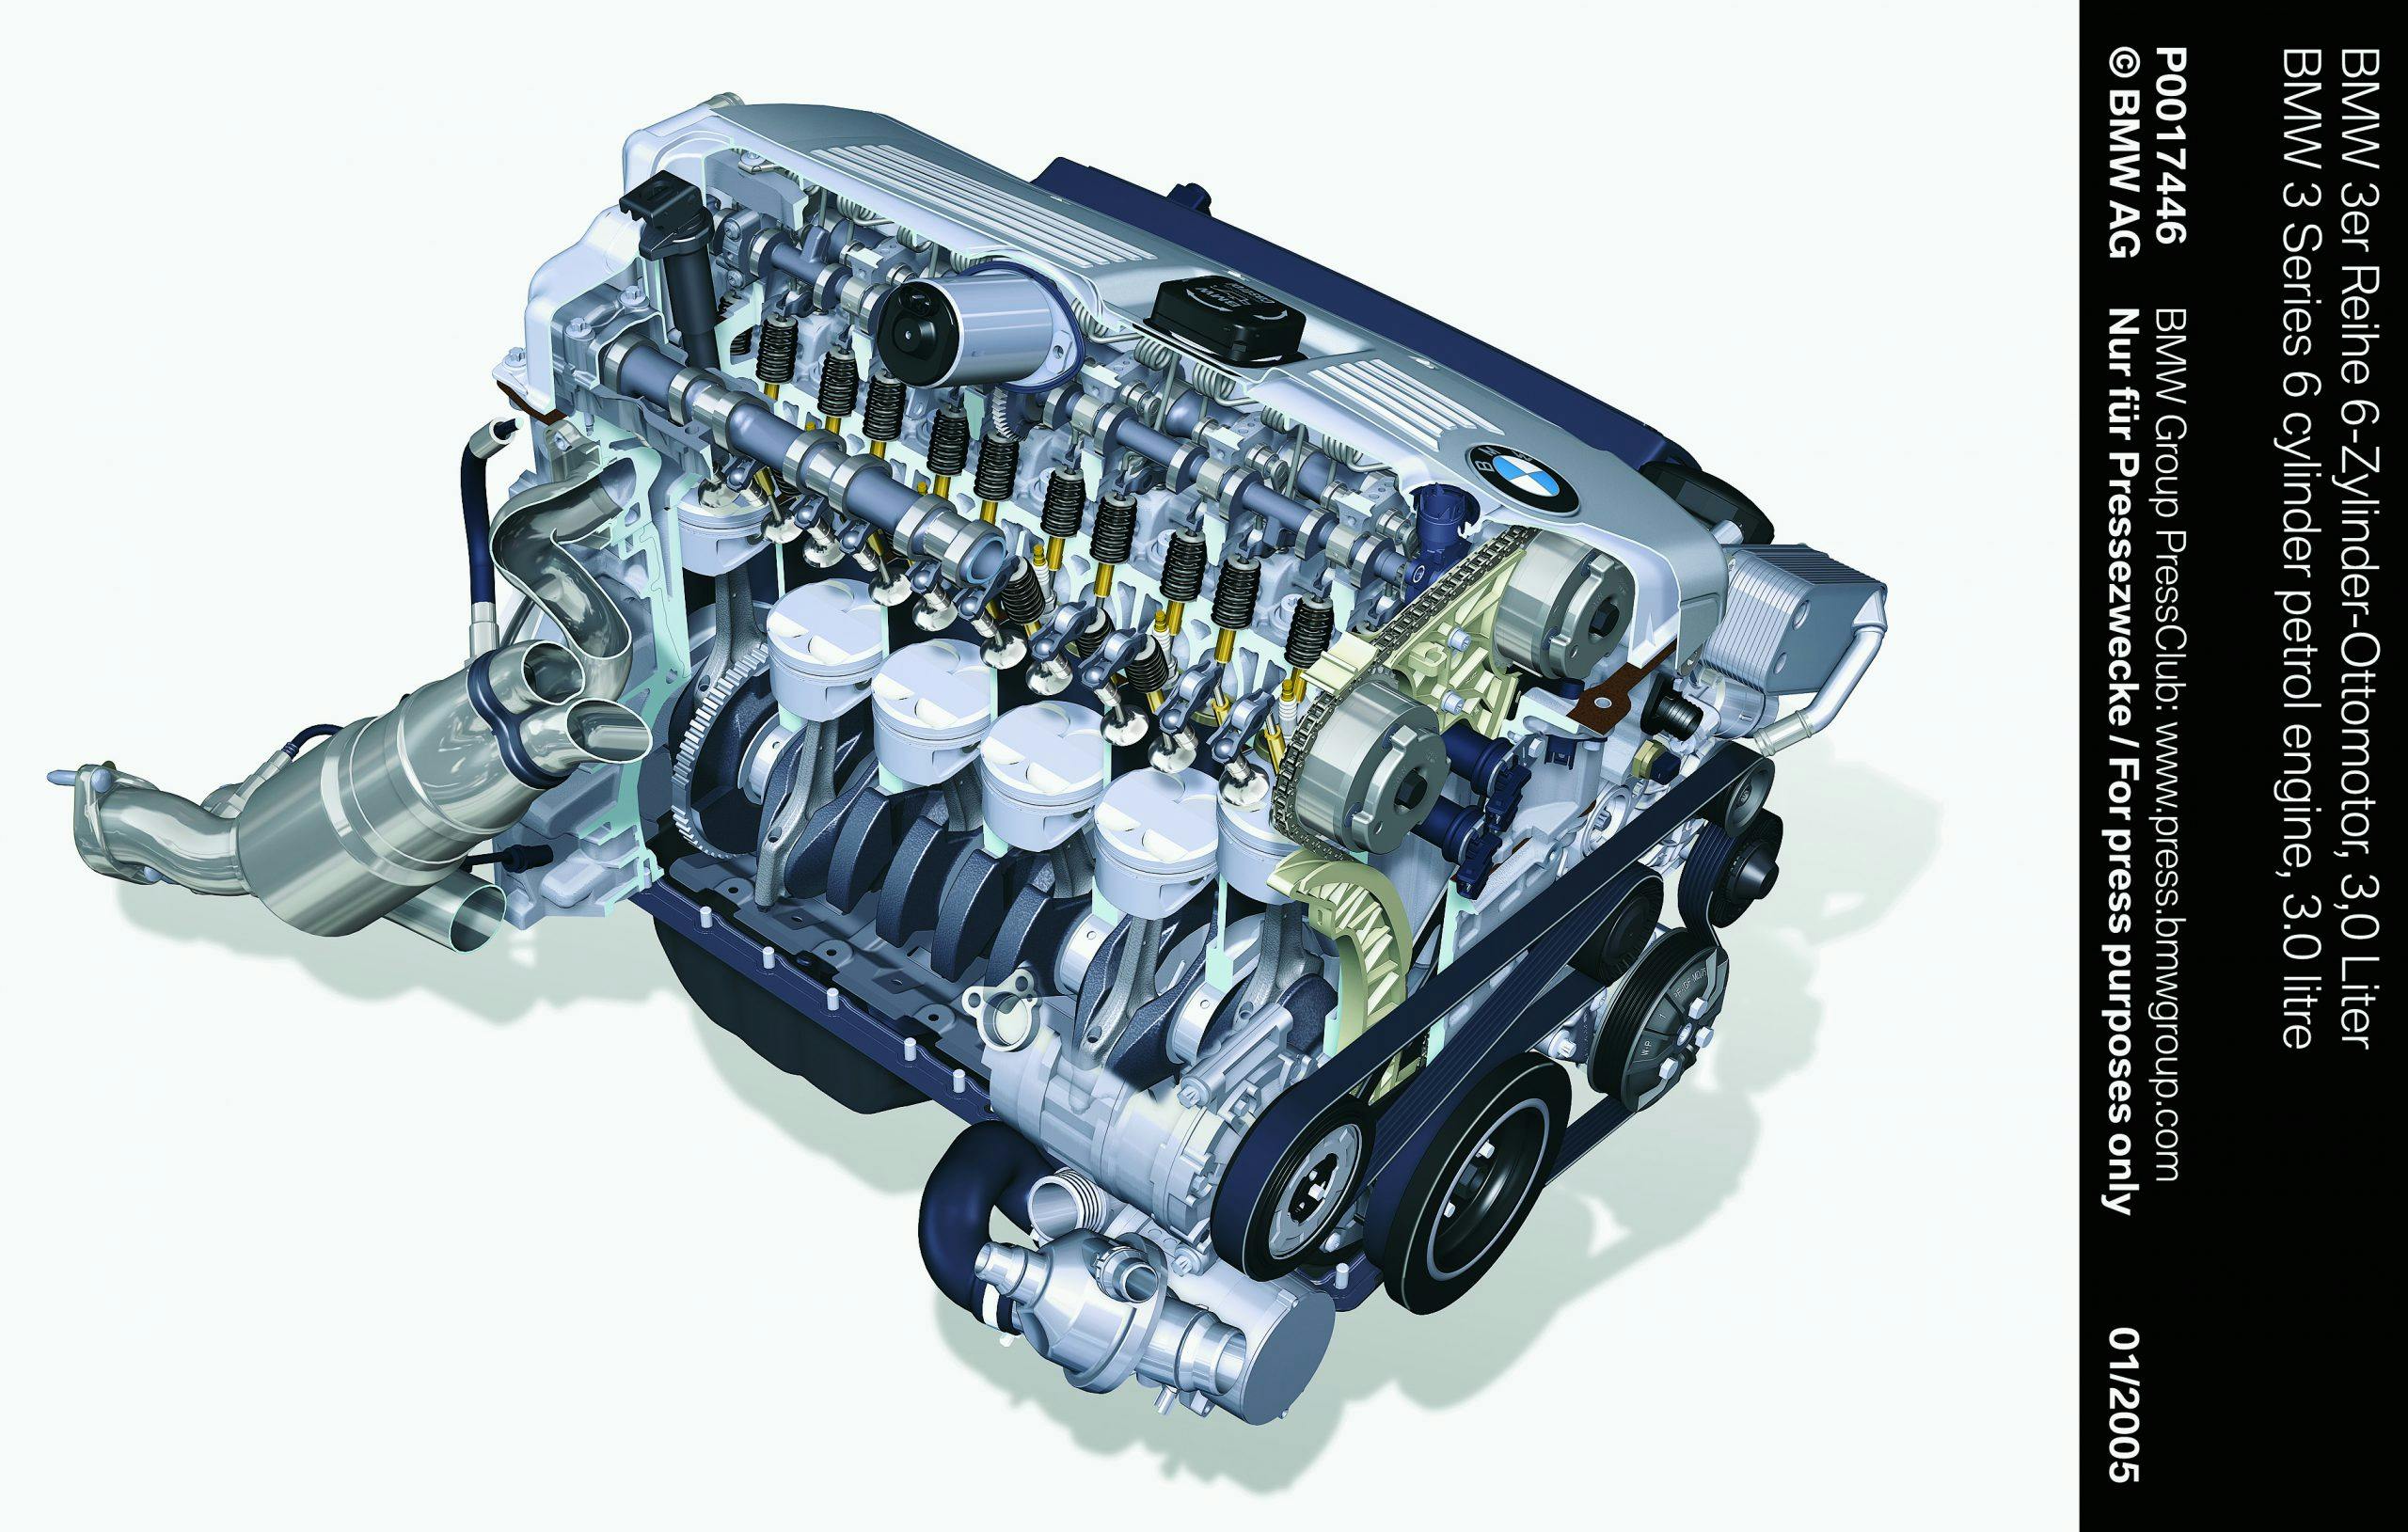 BMW E90 3 series engine inline six 3.0